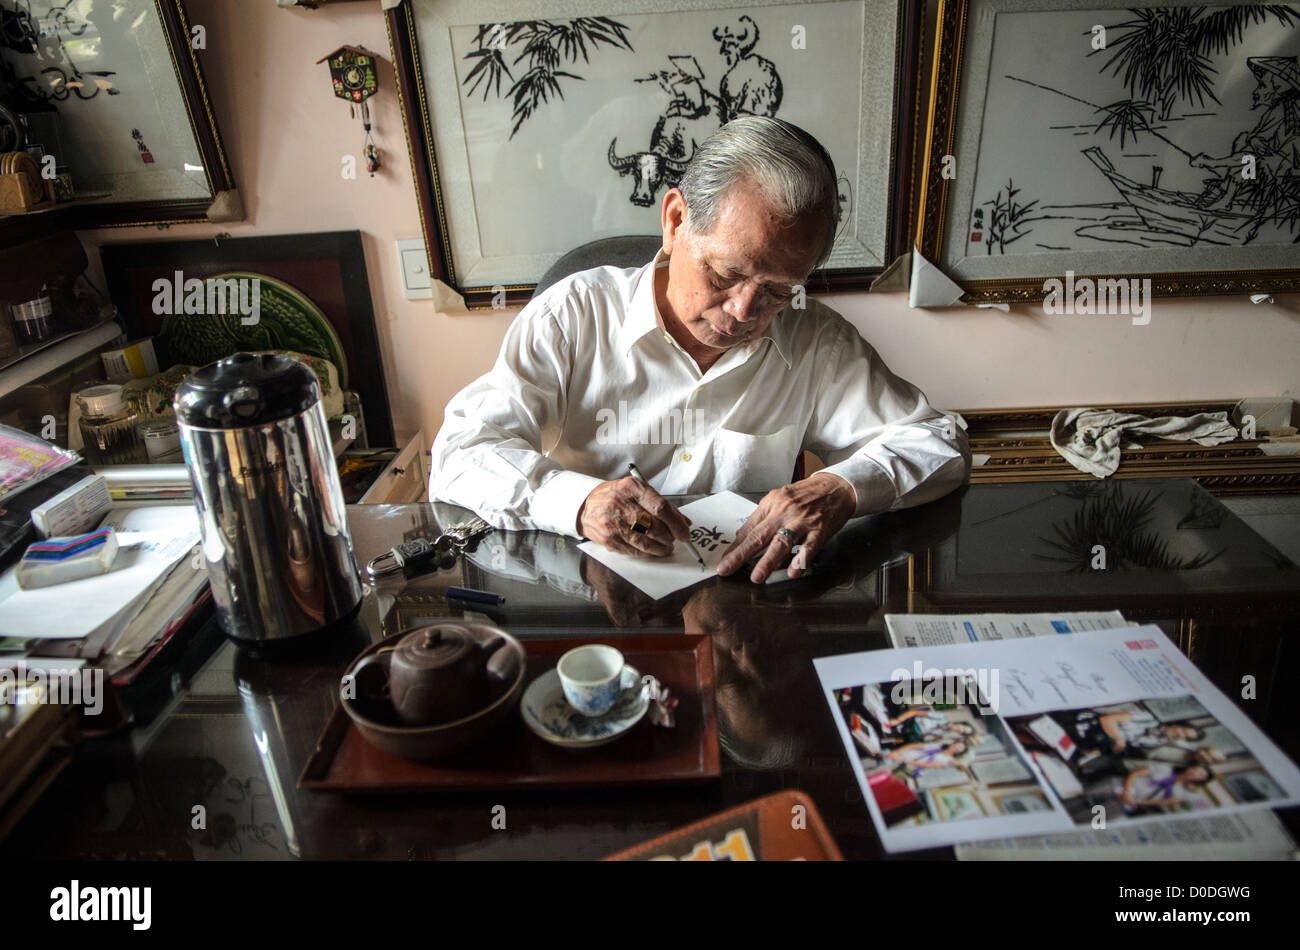 HUE, Vietnam - lokale Handwerker Kinh Van Le, ein Meister der traditionellen Farbton Seidenstickerei, schreibt an seinem Schreibtisch in seinem Geschäft in Hue, Vietnam. Einige seiner Arbeiten, hängt an der Wand im Hintergrund. Stockfoto